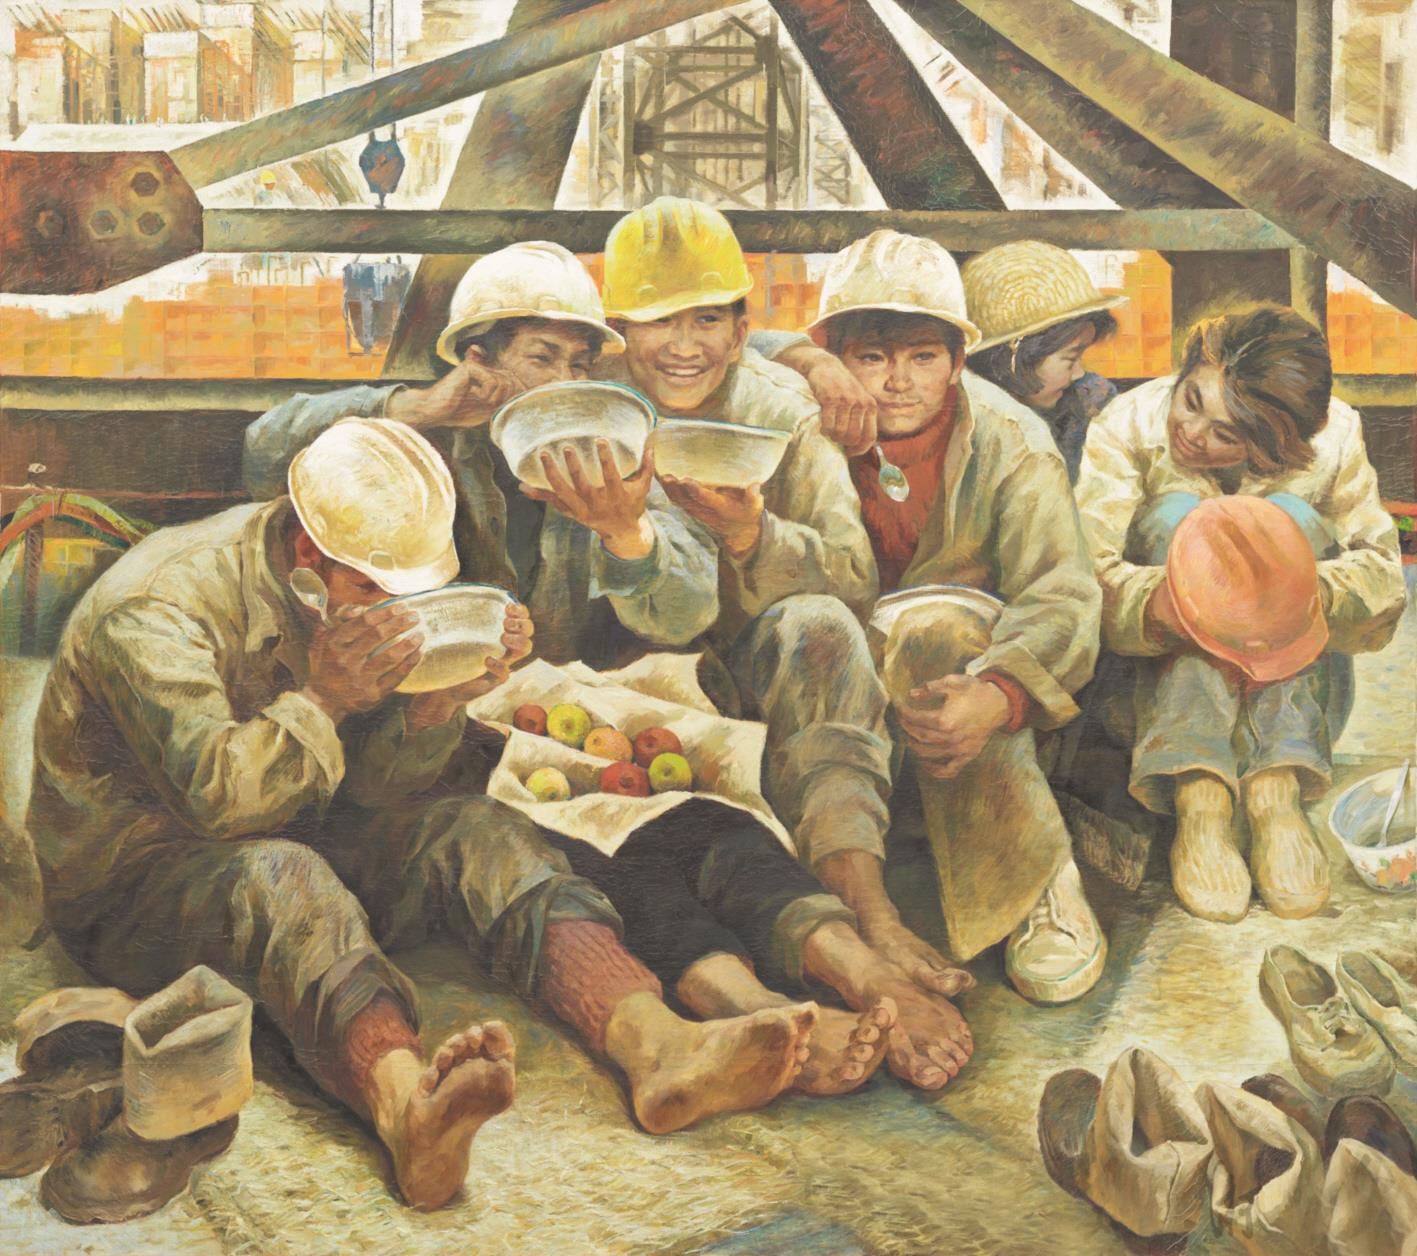 唐小禾,程犁 大坝的儿女 1984年 油画 140×157cm